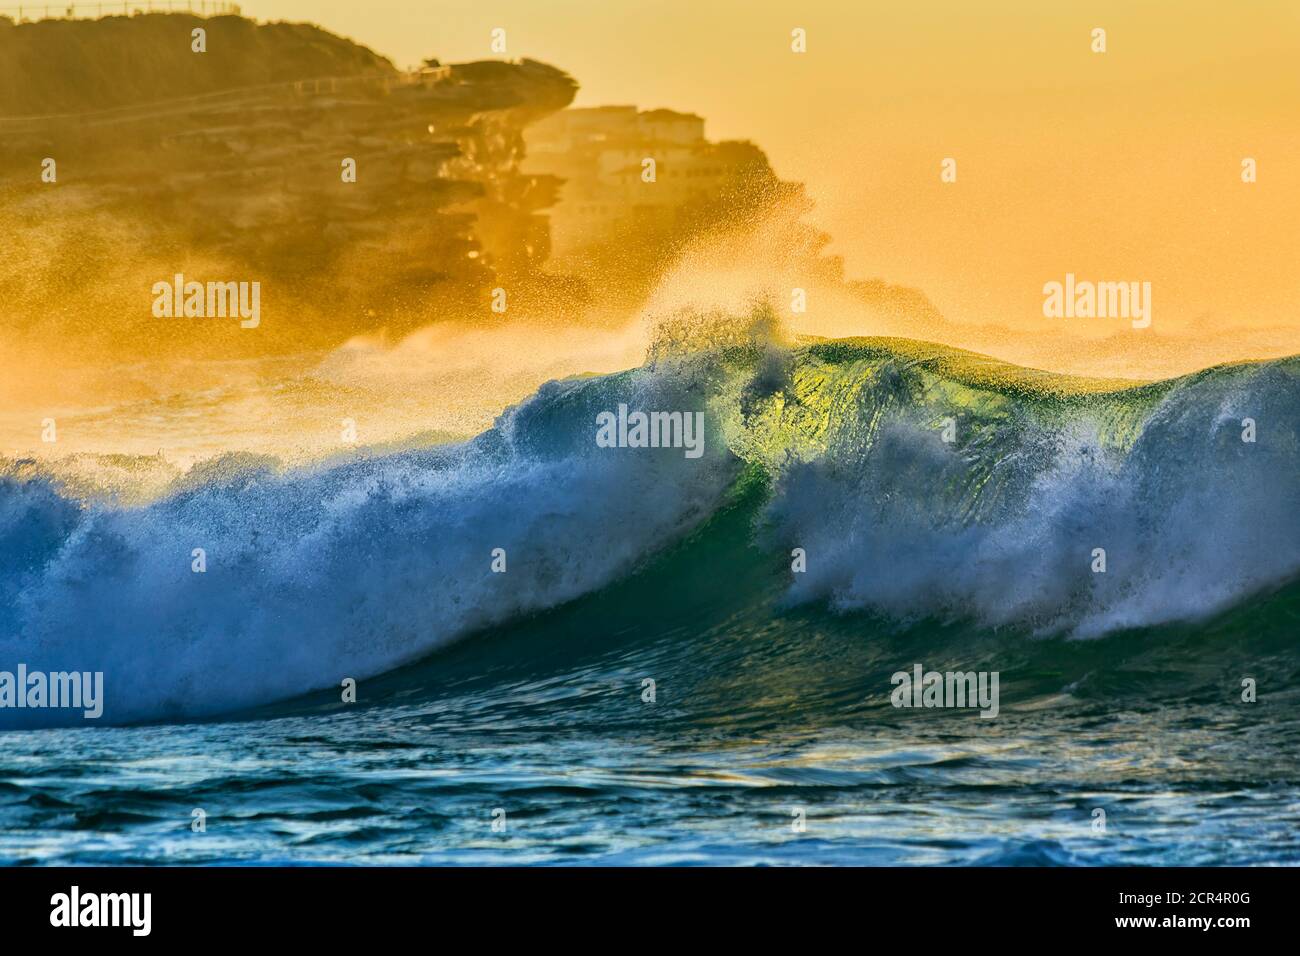 Ondulante ola esmeralda con luz brillante y suave de la mañana en la playa de Bronte en Sydney. Foto de stock